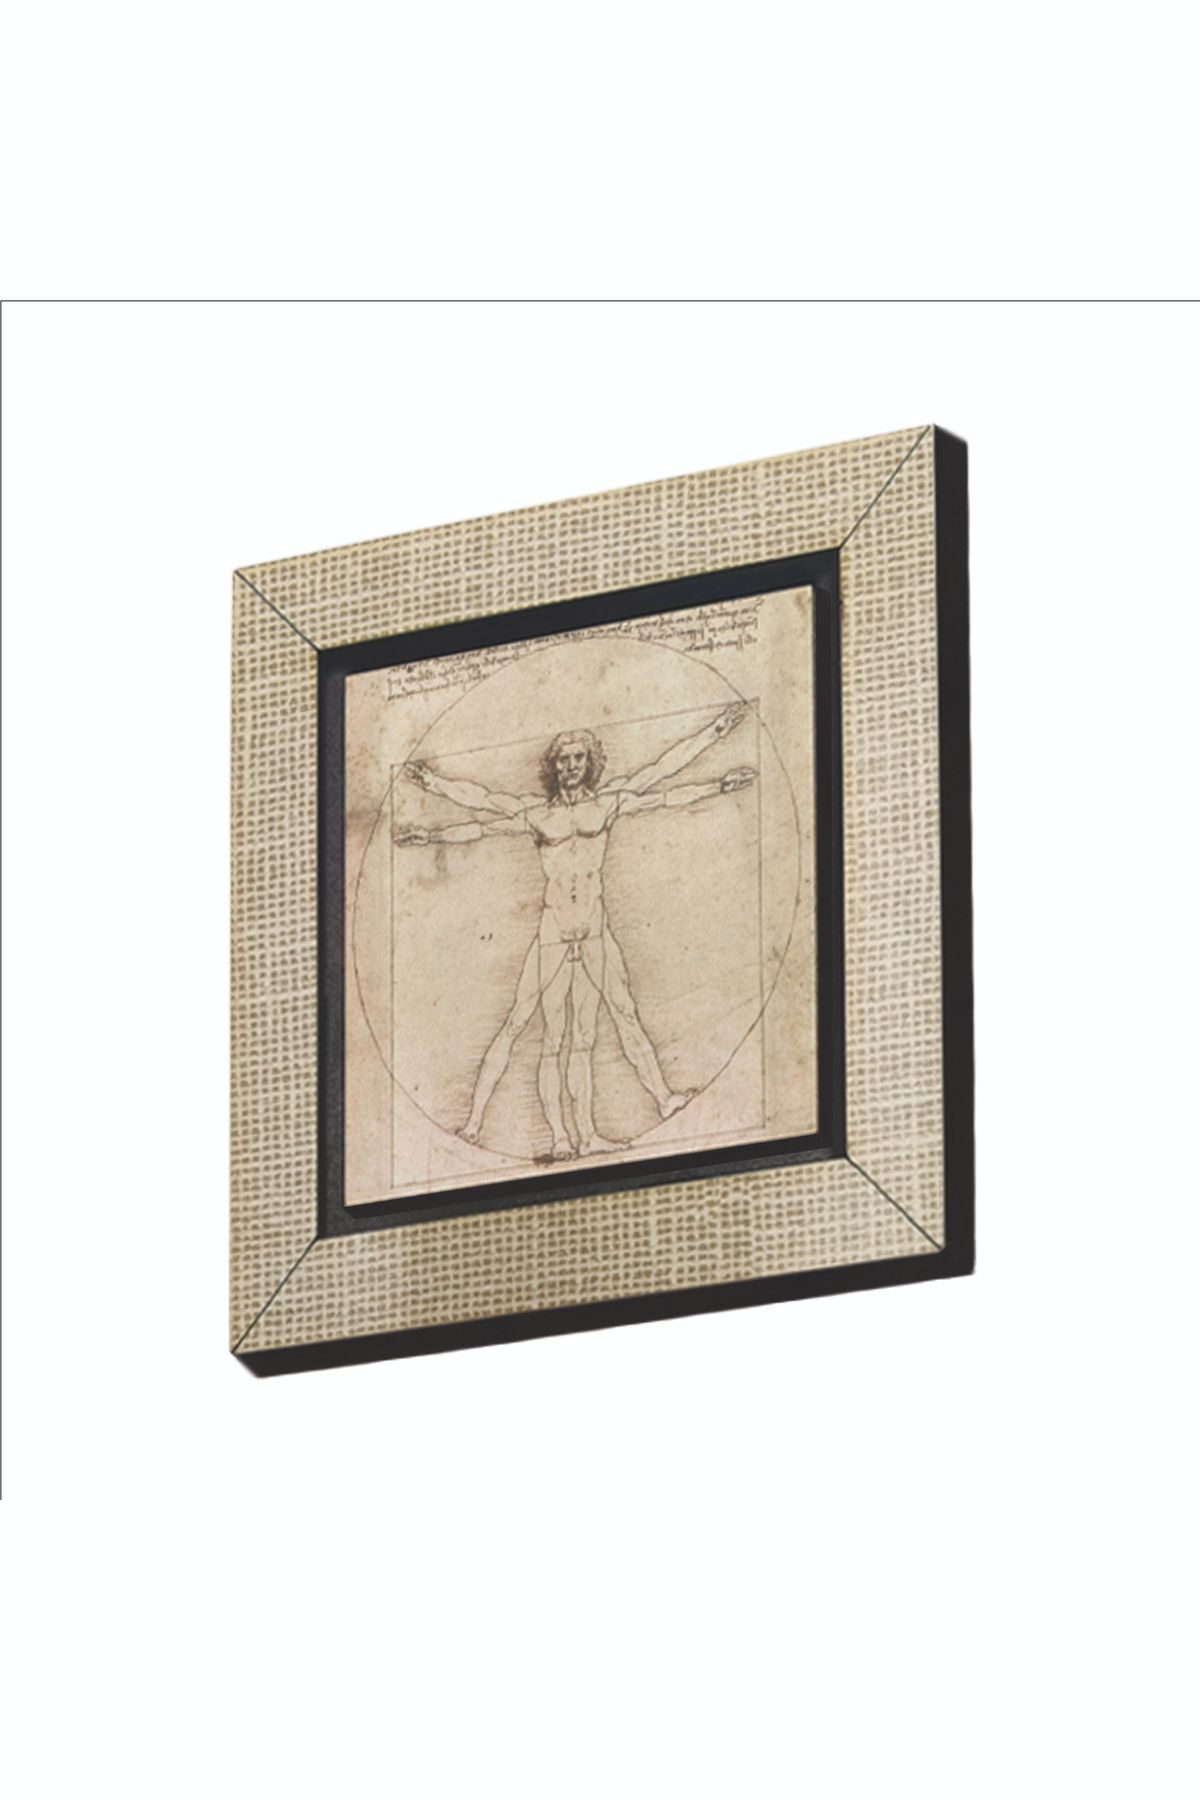 BAKSEPETE Vitruvius Adamı Leonardo Da Vinci, 1492 Baskılı Mdf Magnetkrg-141buzdolabı Süsü